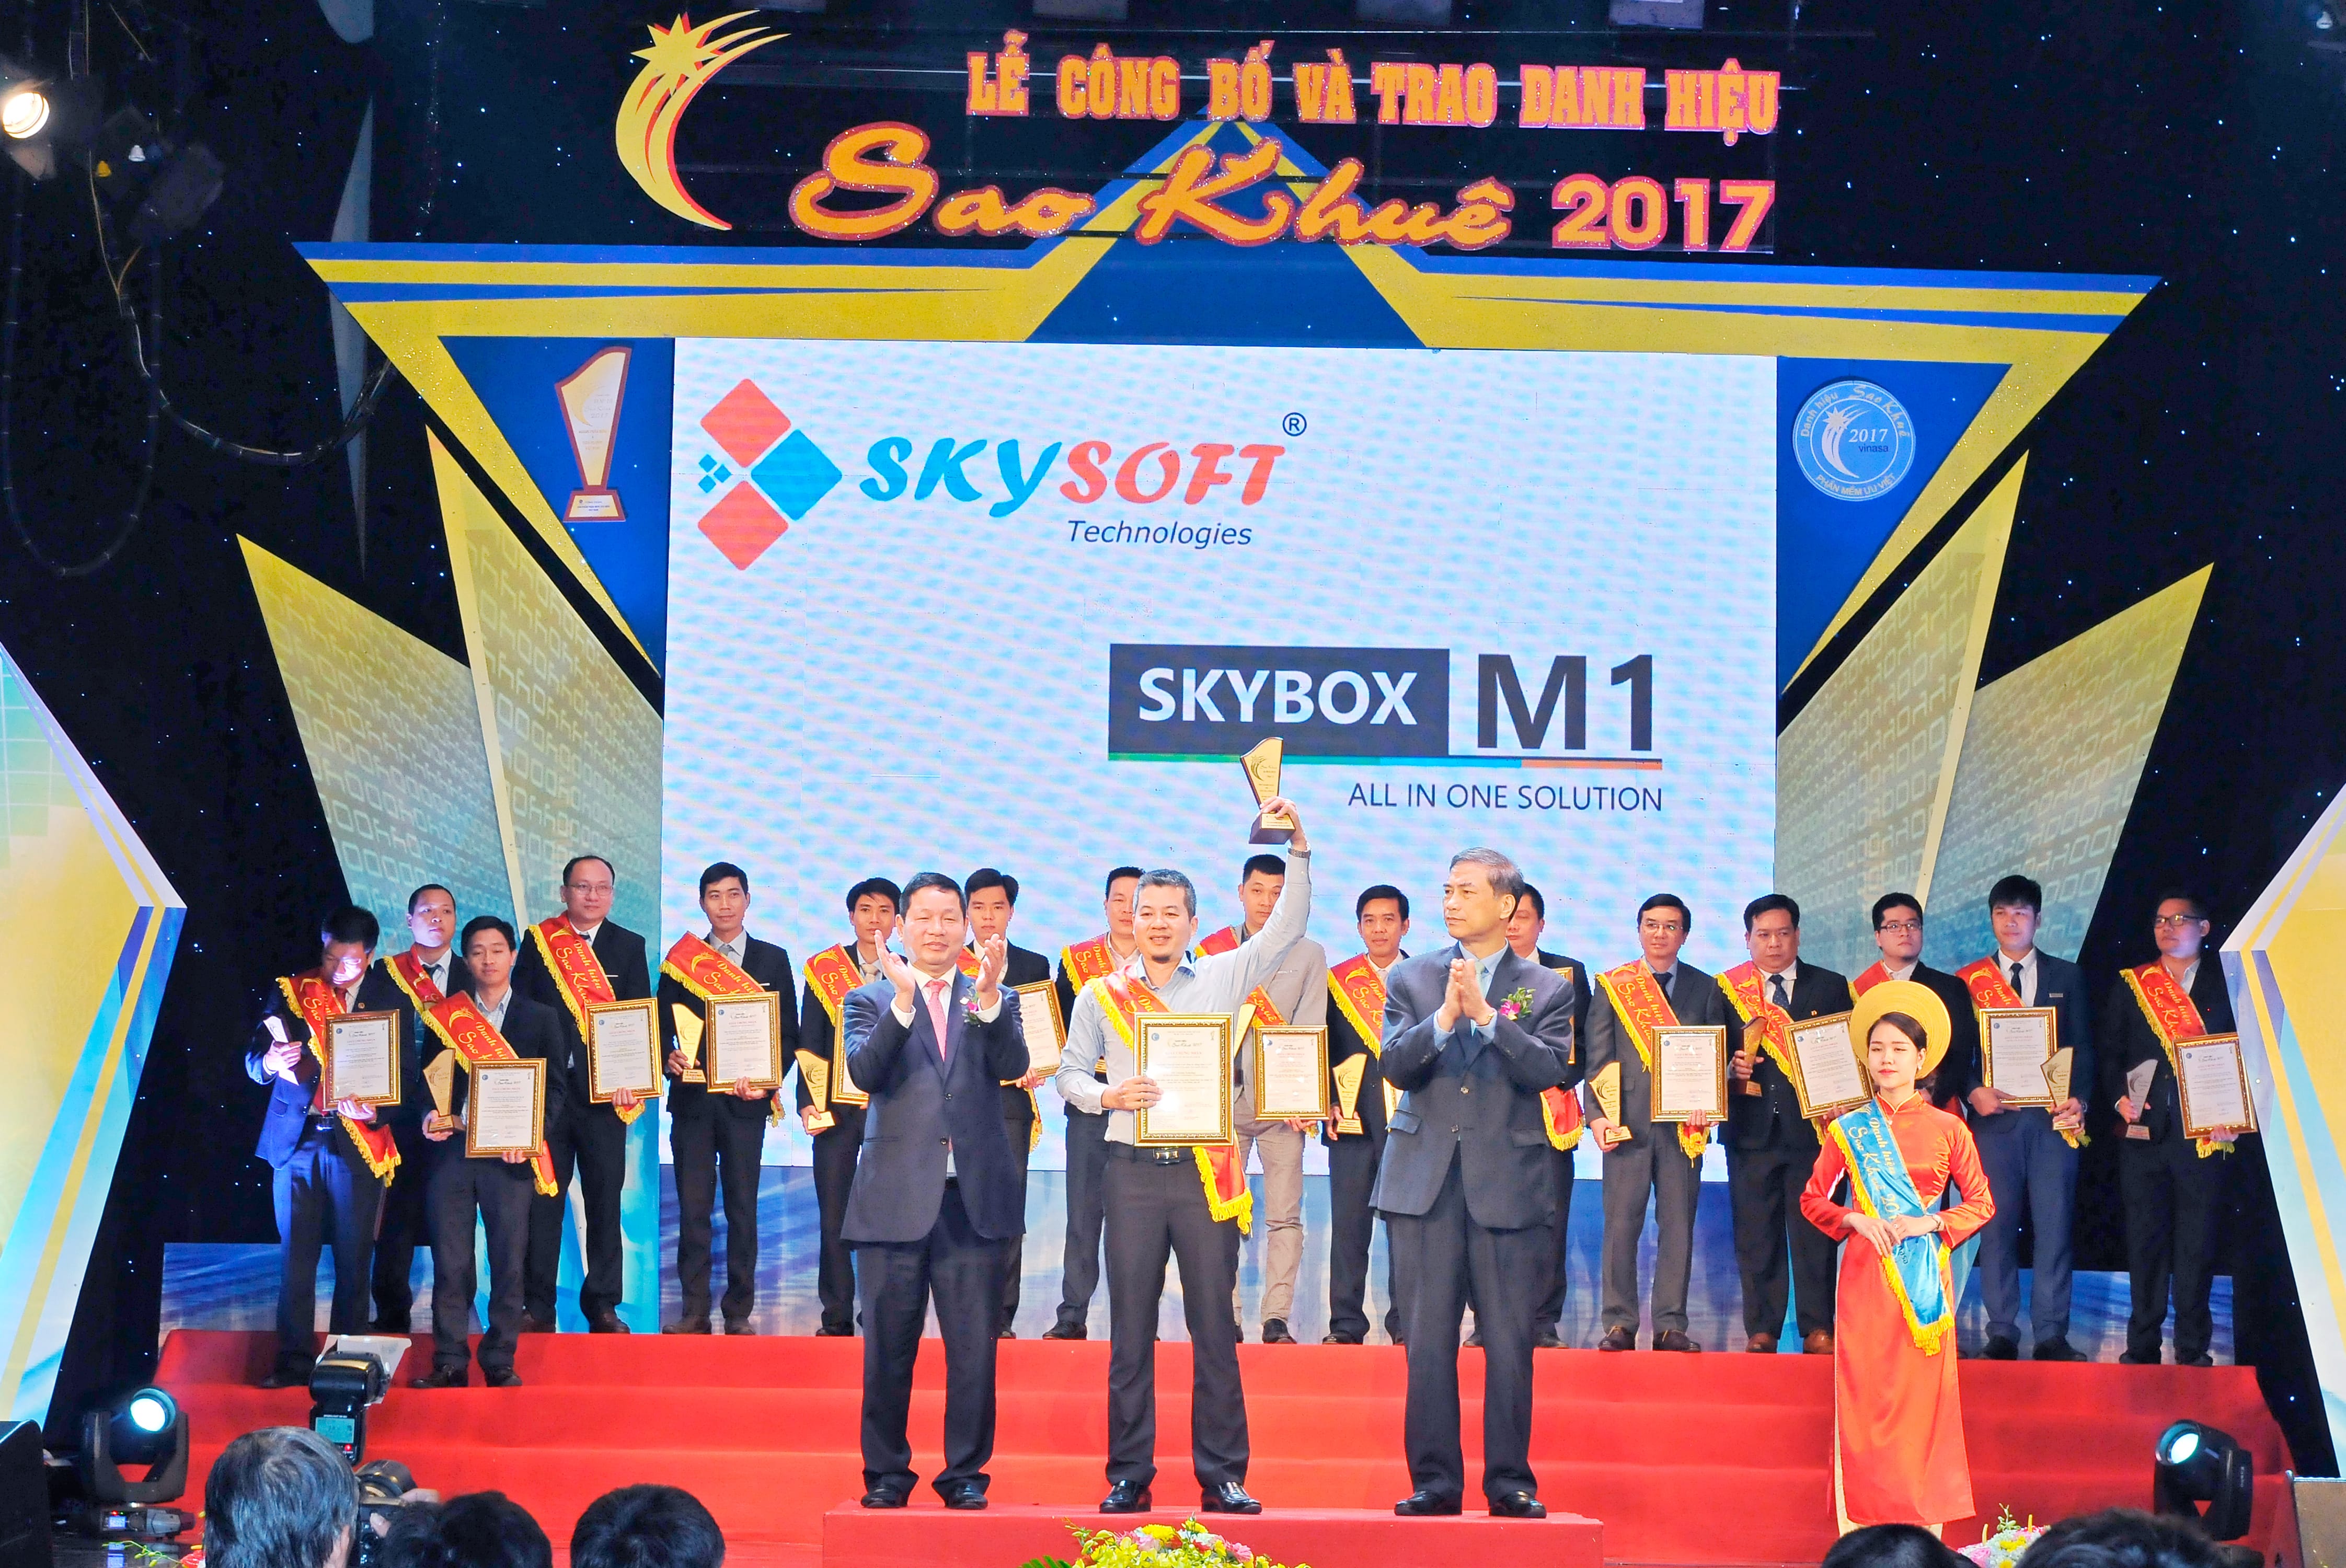 Ông Nguyễn Trường Giang – Chủ tịch HĐQT công ty Skysoft lên nhận giải Sao Khuê 2017